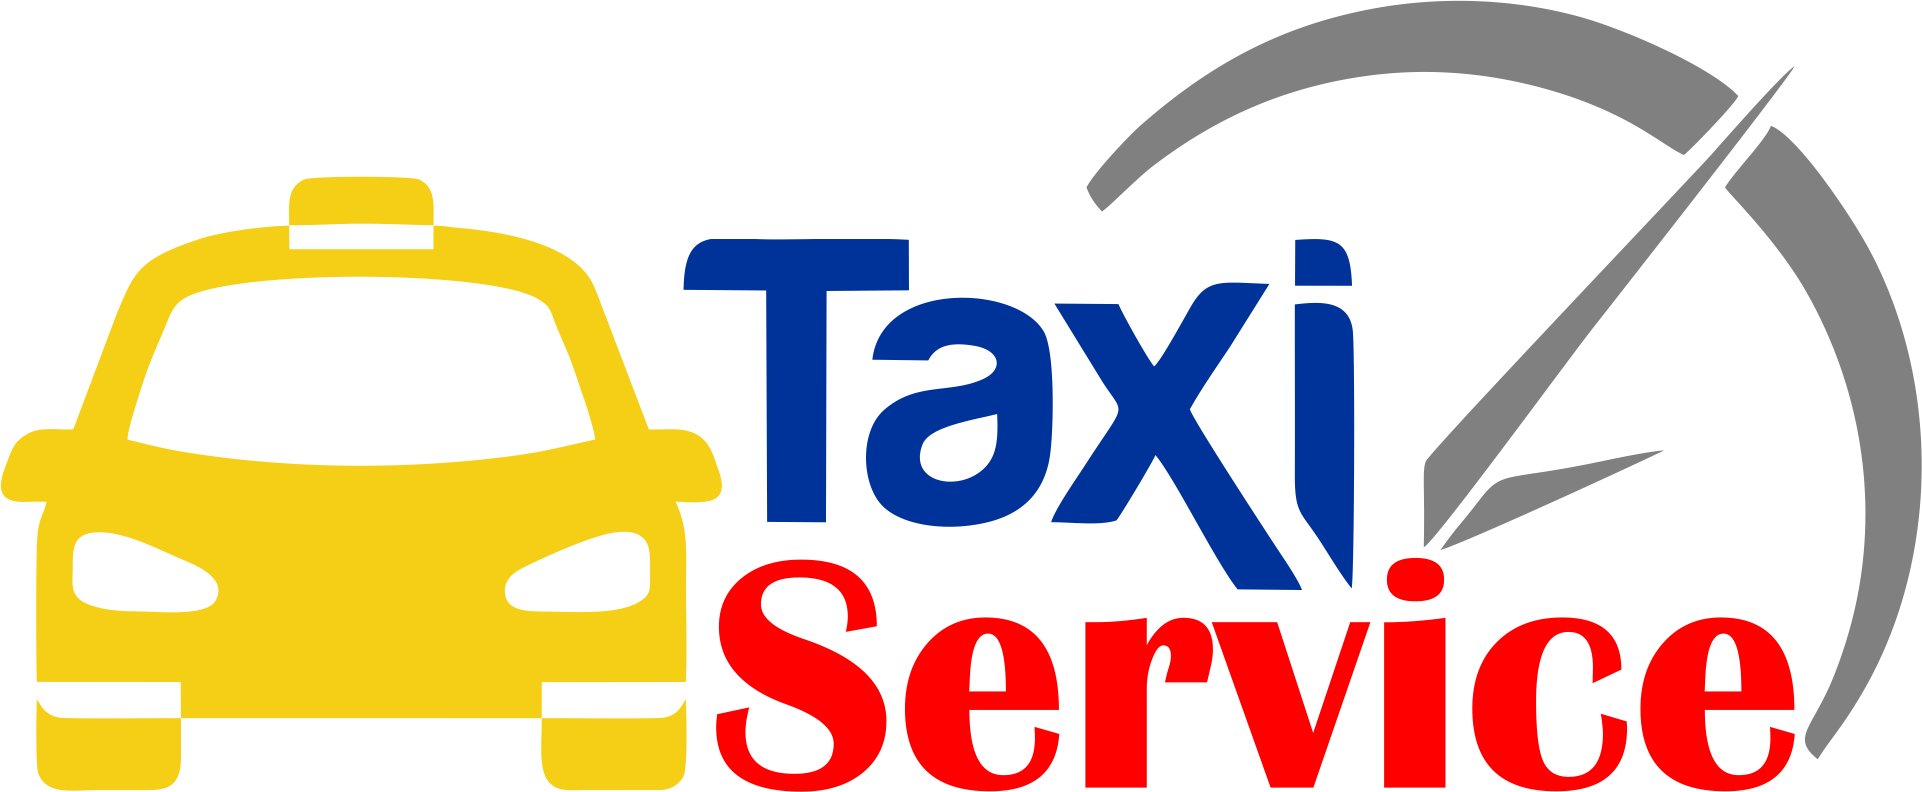 Doon Taxi Services